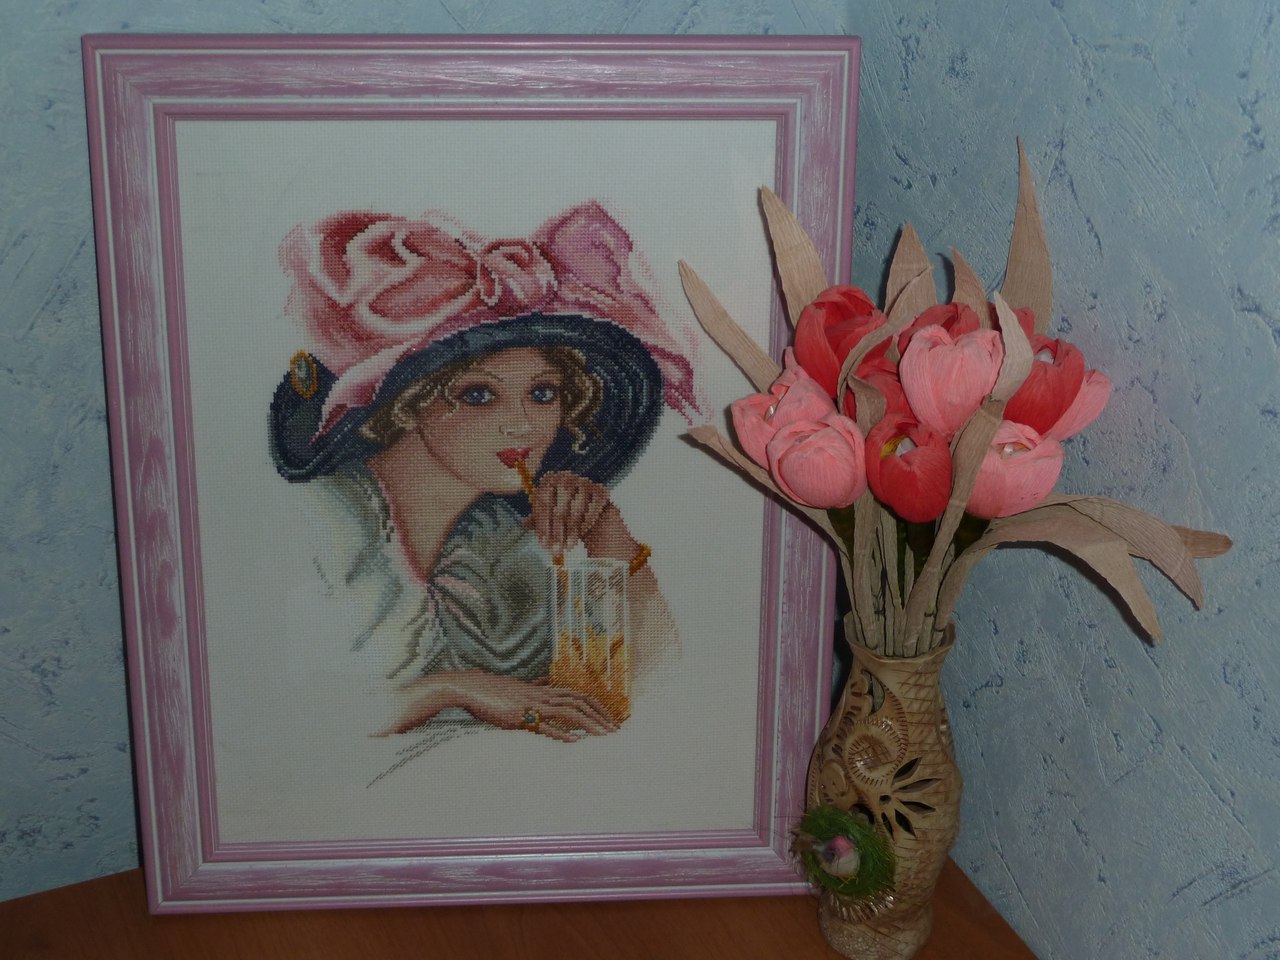 Отзыв о Наборе для вышивания "Девушка с розовым бантом" по картине Харрисона Фишера от фирмы МАРЬЯ ИСКУСНИЦА